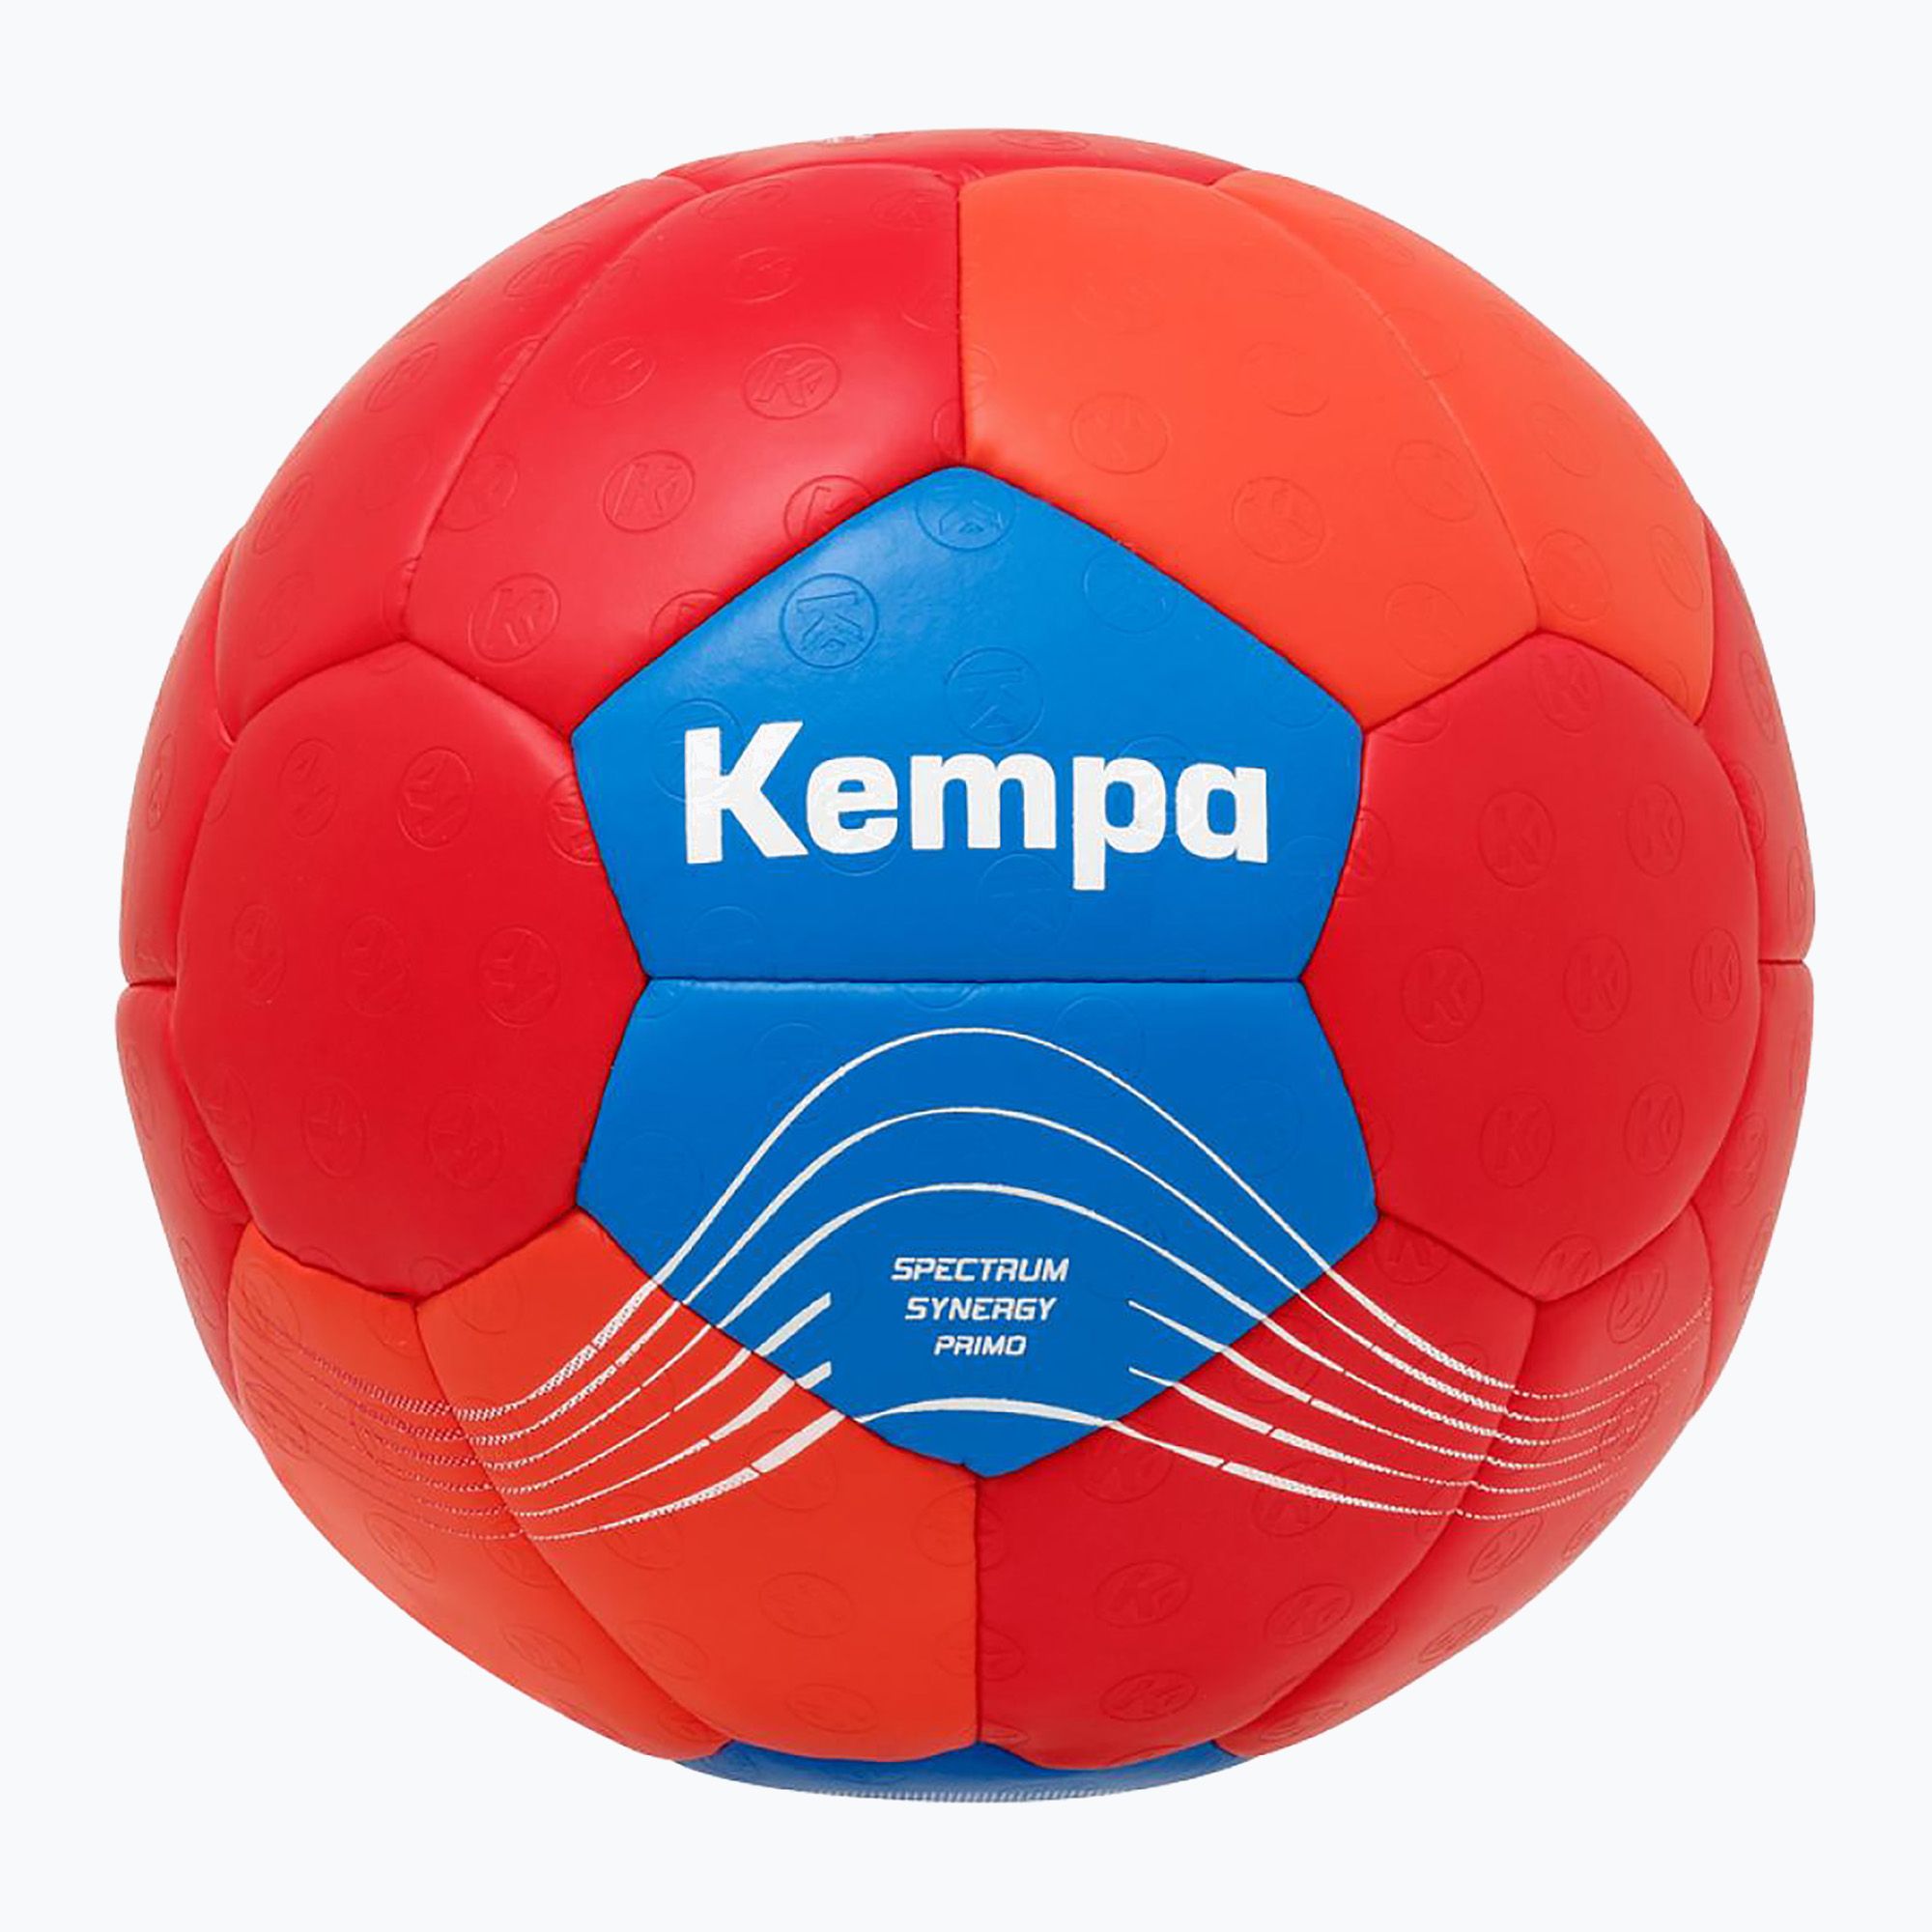 Piłka do piłki ręcznej Kempa Spectrum Synergy Primo czerwona/niebieska rozmiar 3 zdjęcie nr 4